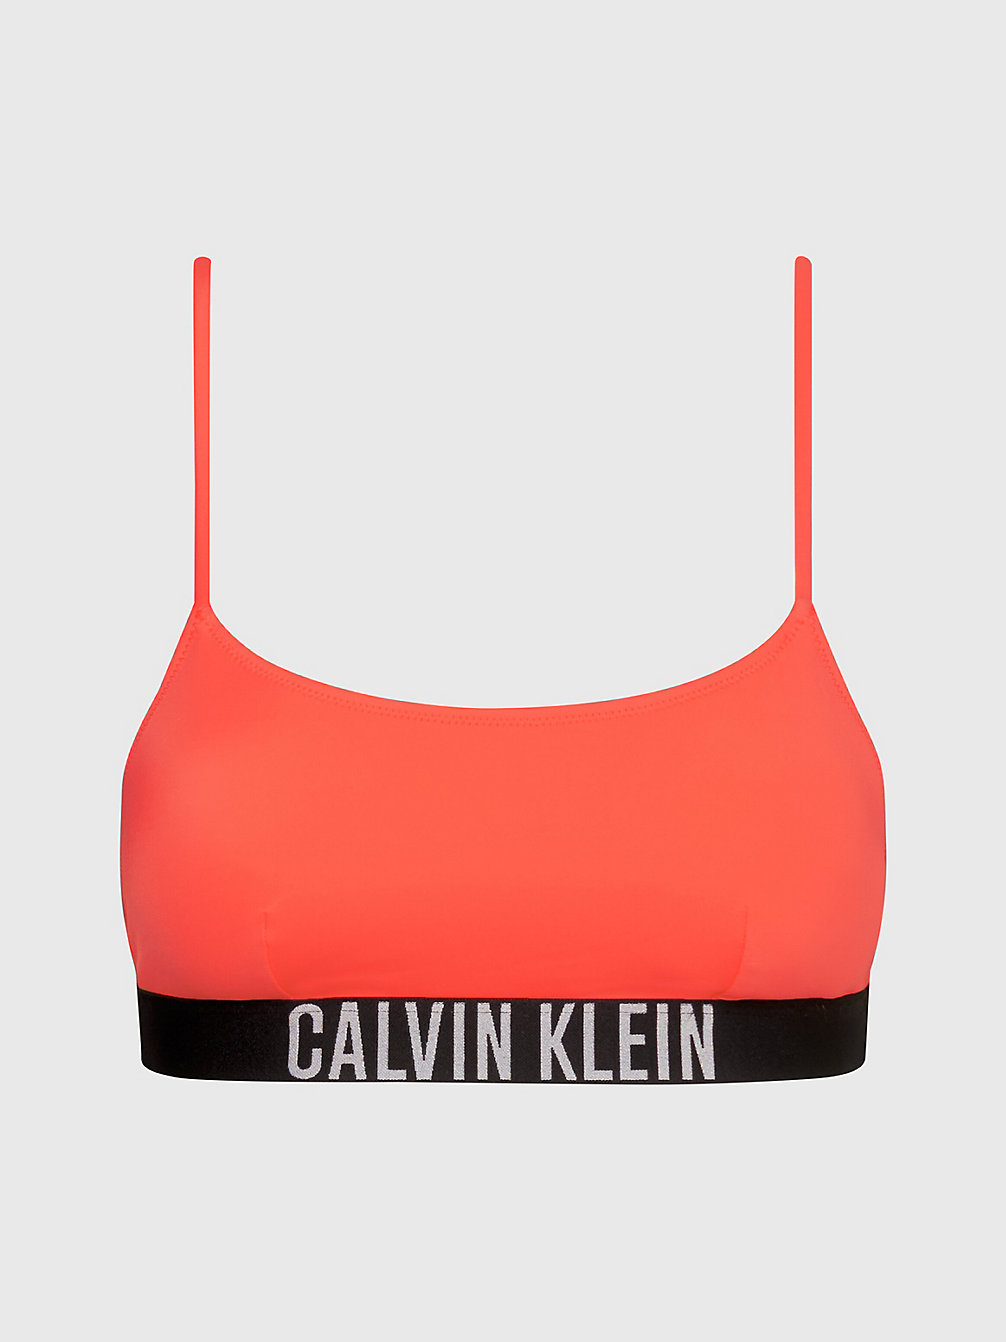 BRIGHT VERMILLION Bralette Bikini Top - Intense Power undefined women Calvin Klein